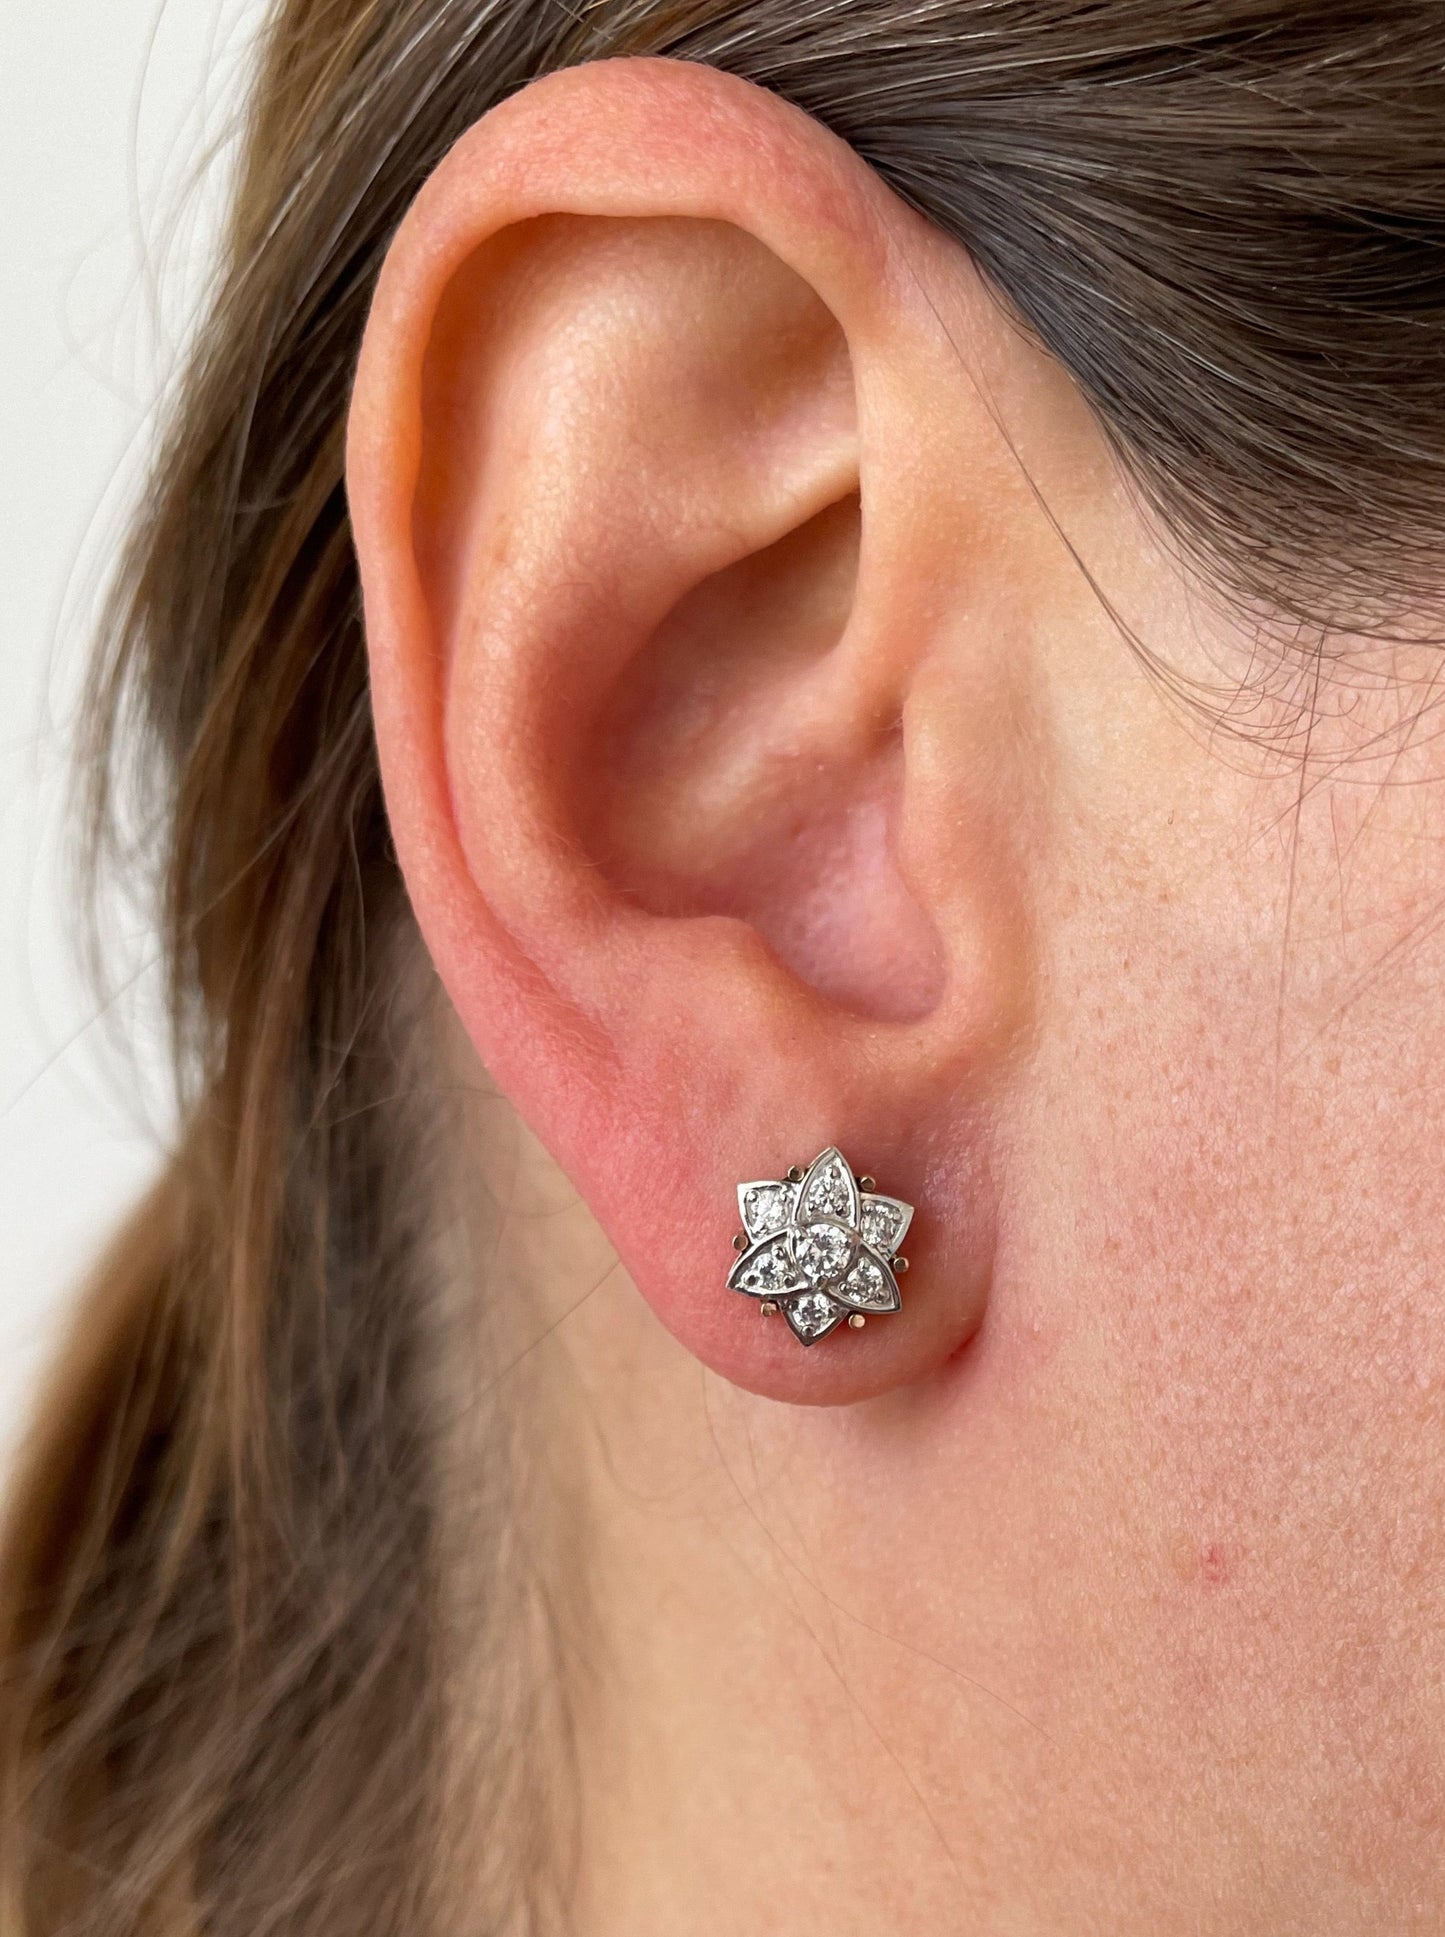 14k gold stud earrings. Gold flower earrings. Solid gold stud earrings for women. Rose Flower Earrings. Gift for wife. Anniversary gift.